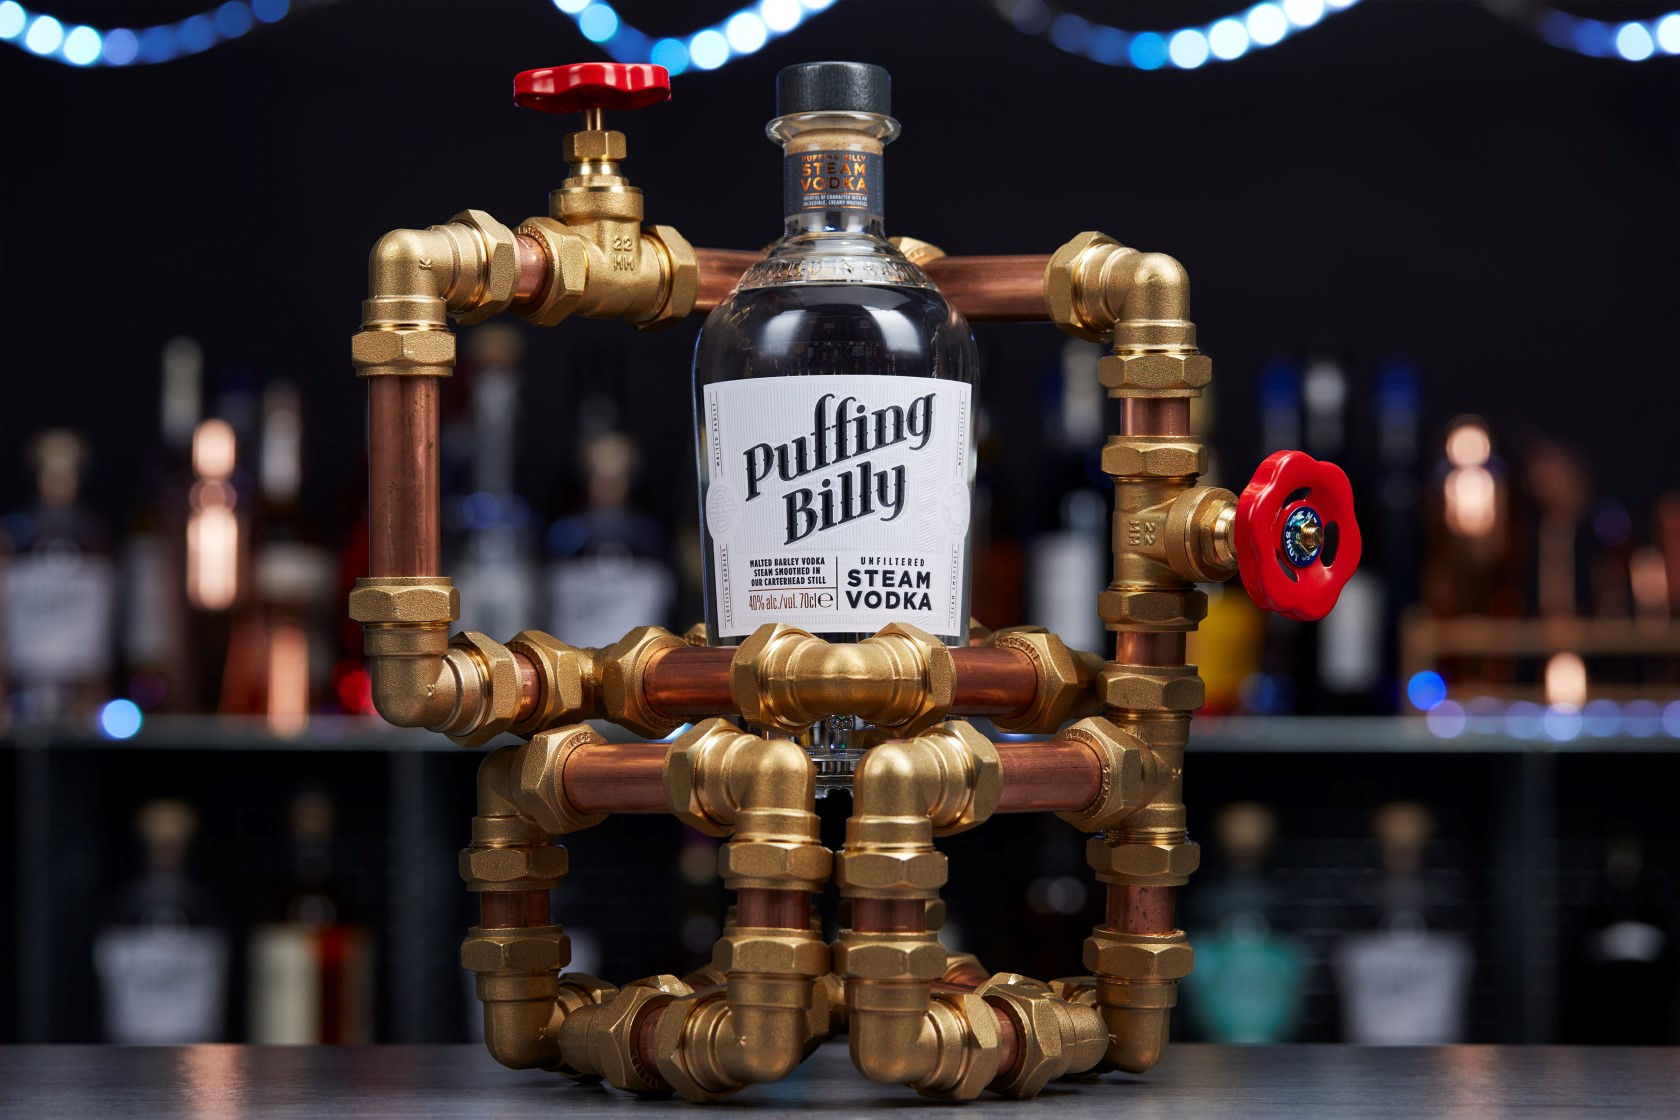 Puffing Billy Steam Vodka - bottle glorifier hero shot